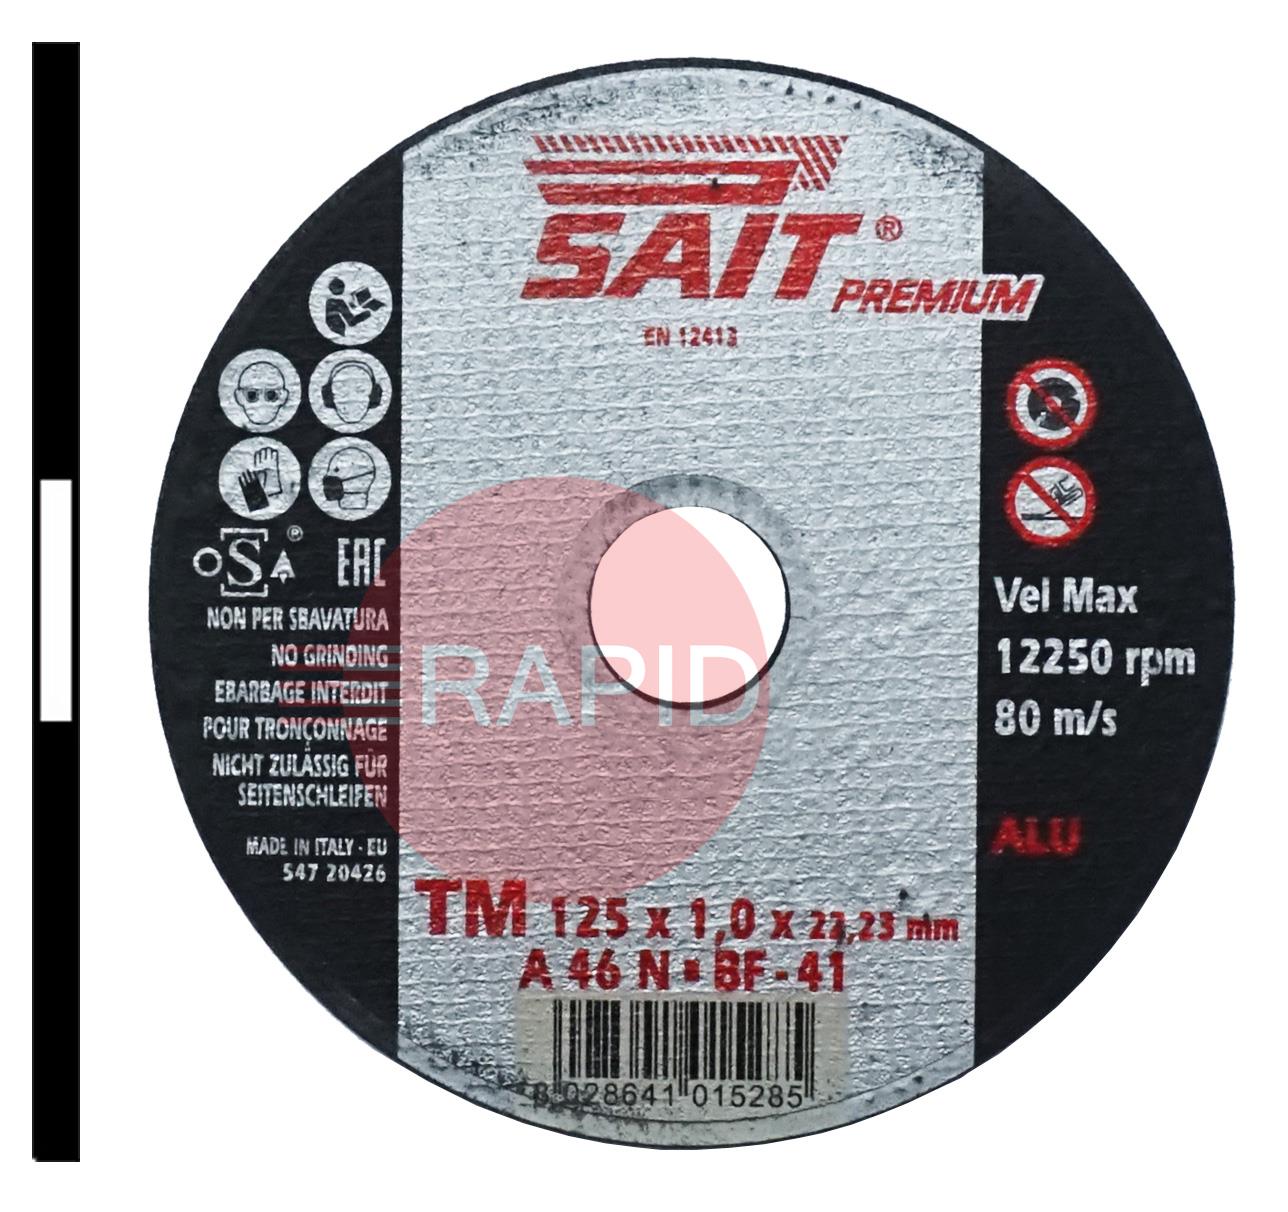 001528  SAIT Premium 125mm (5) Slitting Cutting Disc 1mm Thick - Grade TM A 46 N For Aluminium.